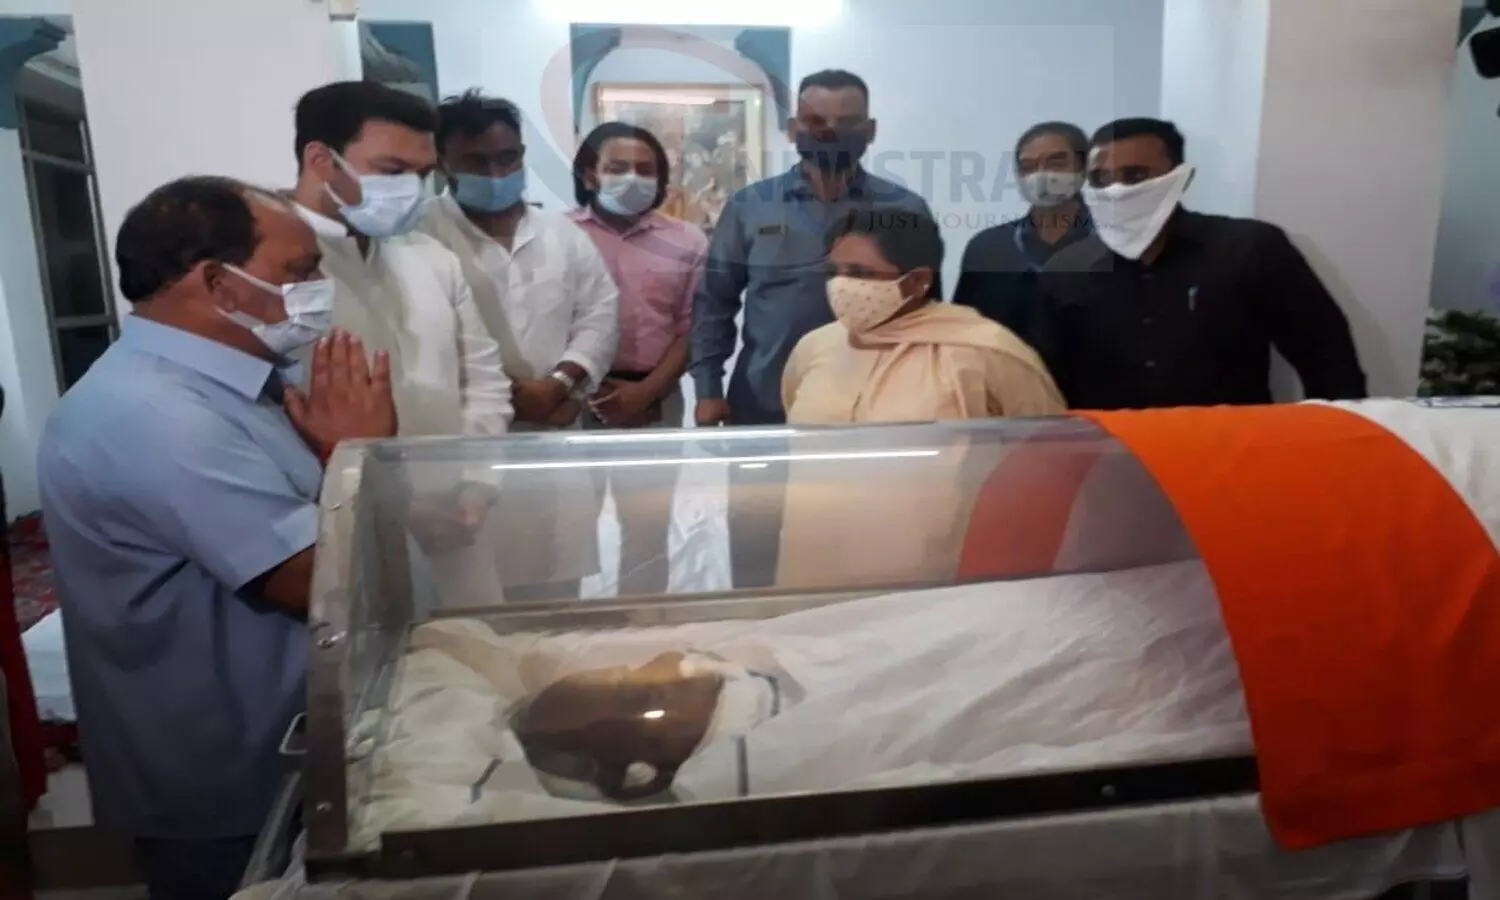 Mayawati arrived to pay tribute to former CM Kalyan Singh